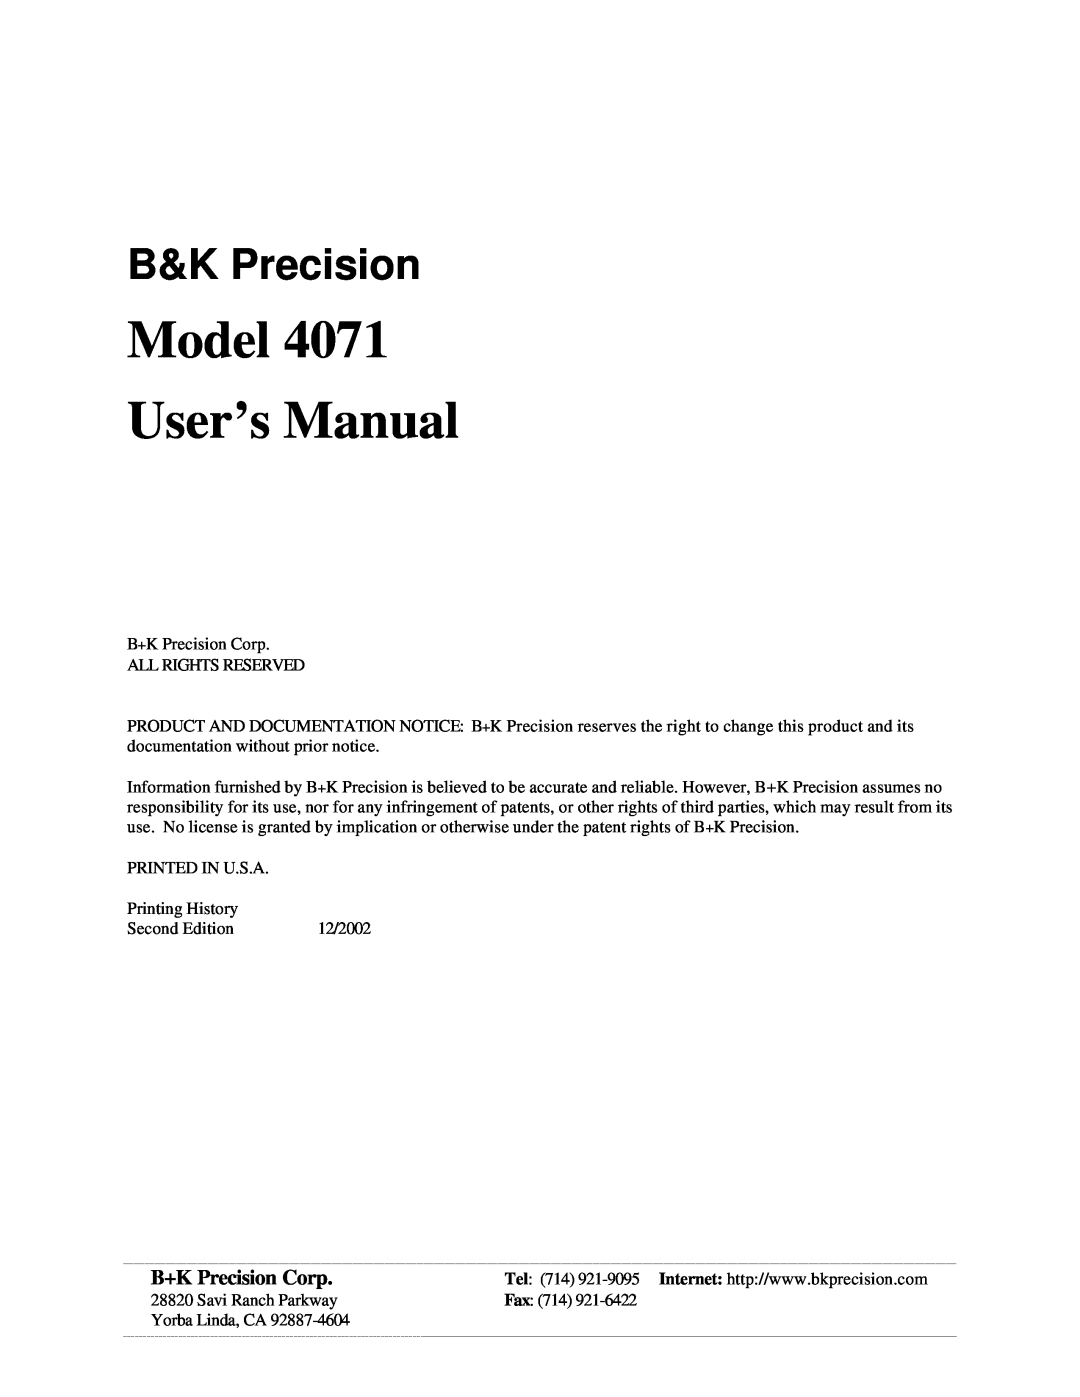 B&K 4071 user manual B&K Precision, B+K Precision Corp, Model User’s Manual 